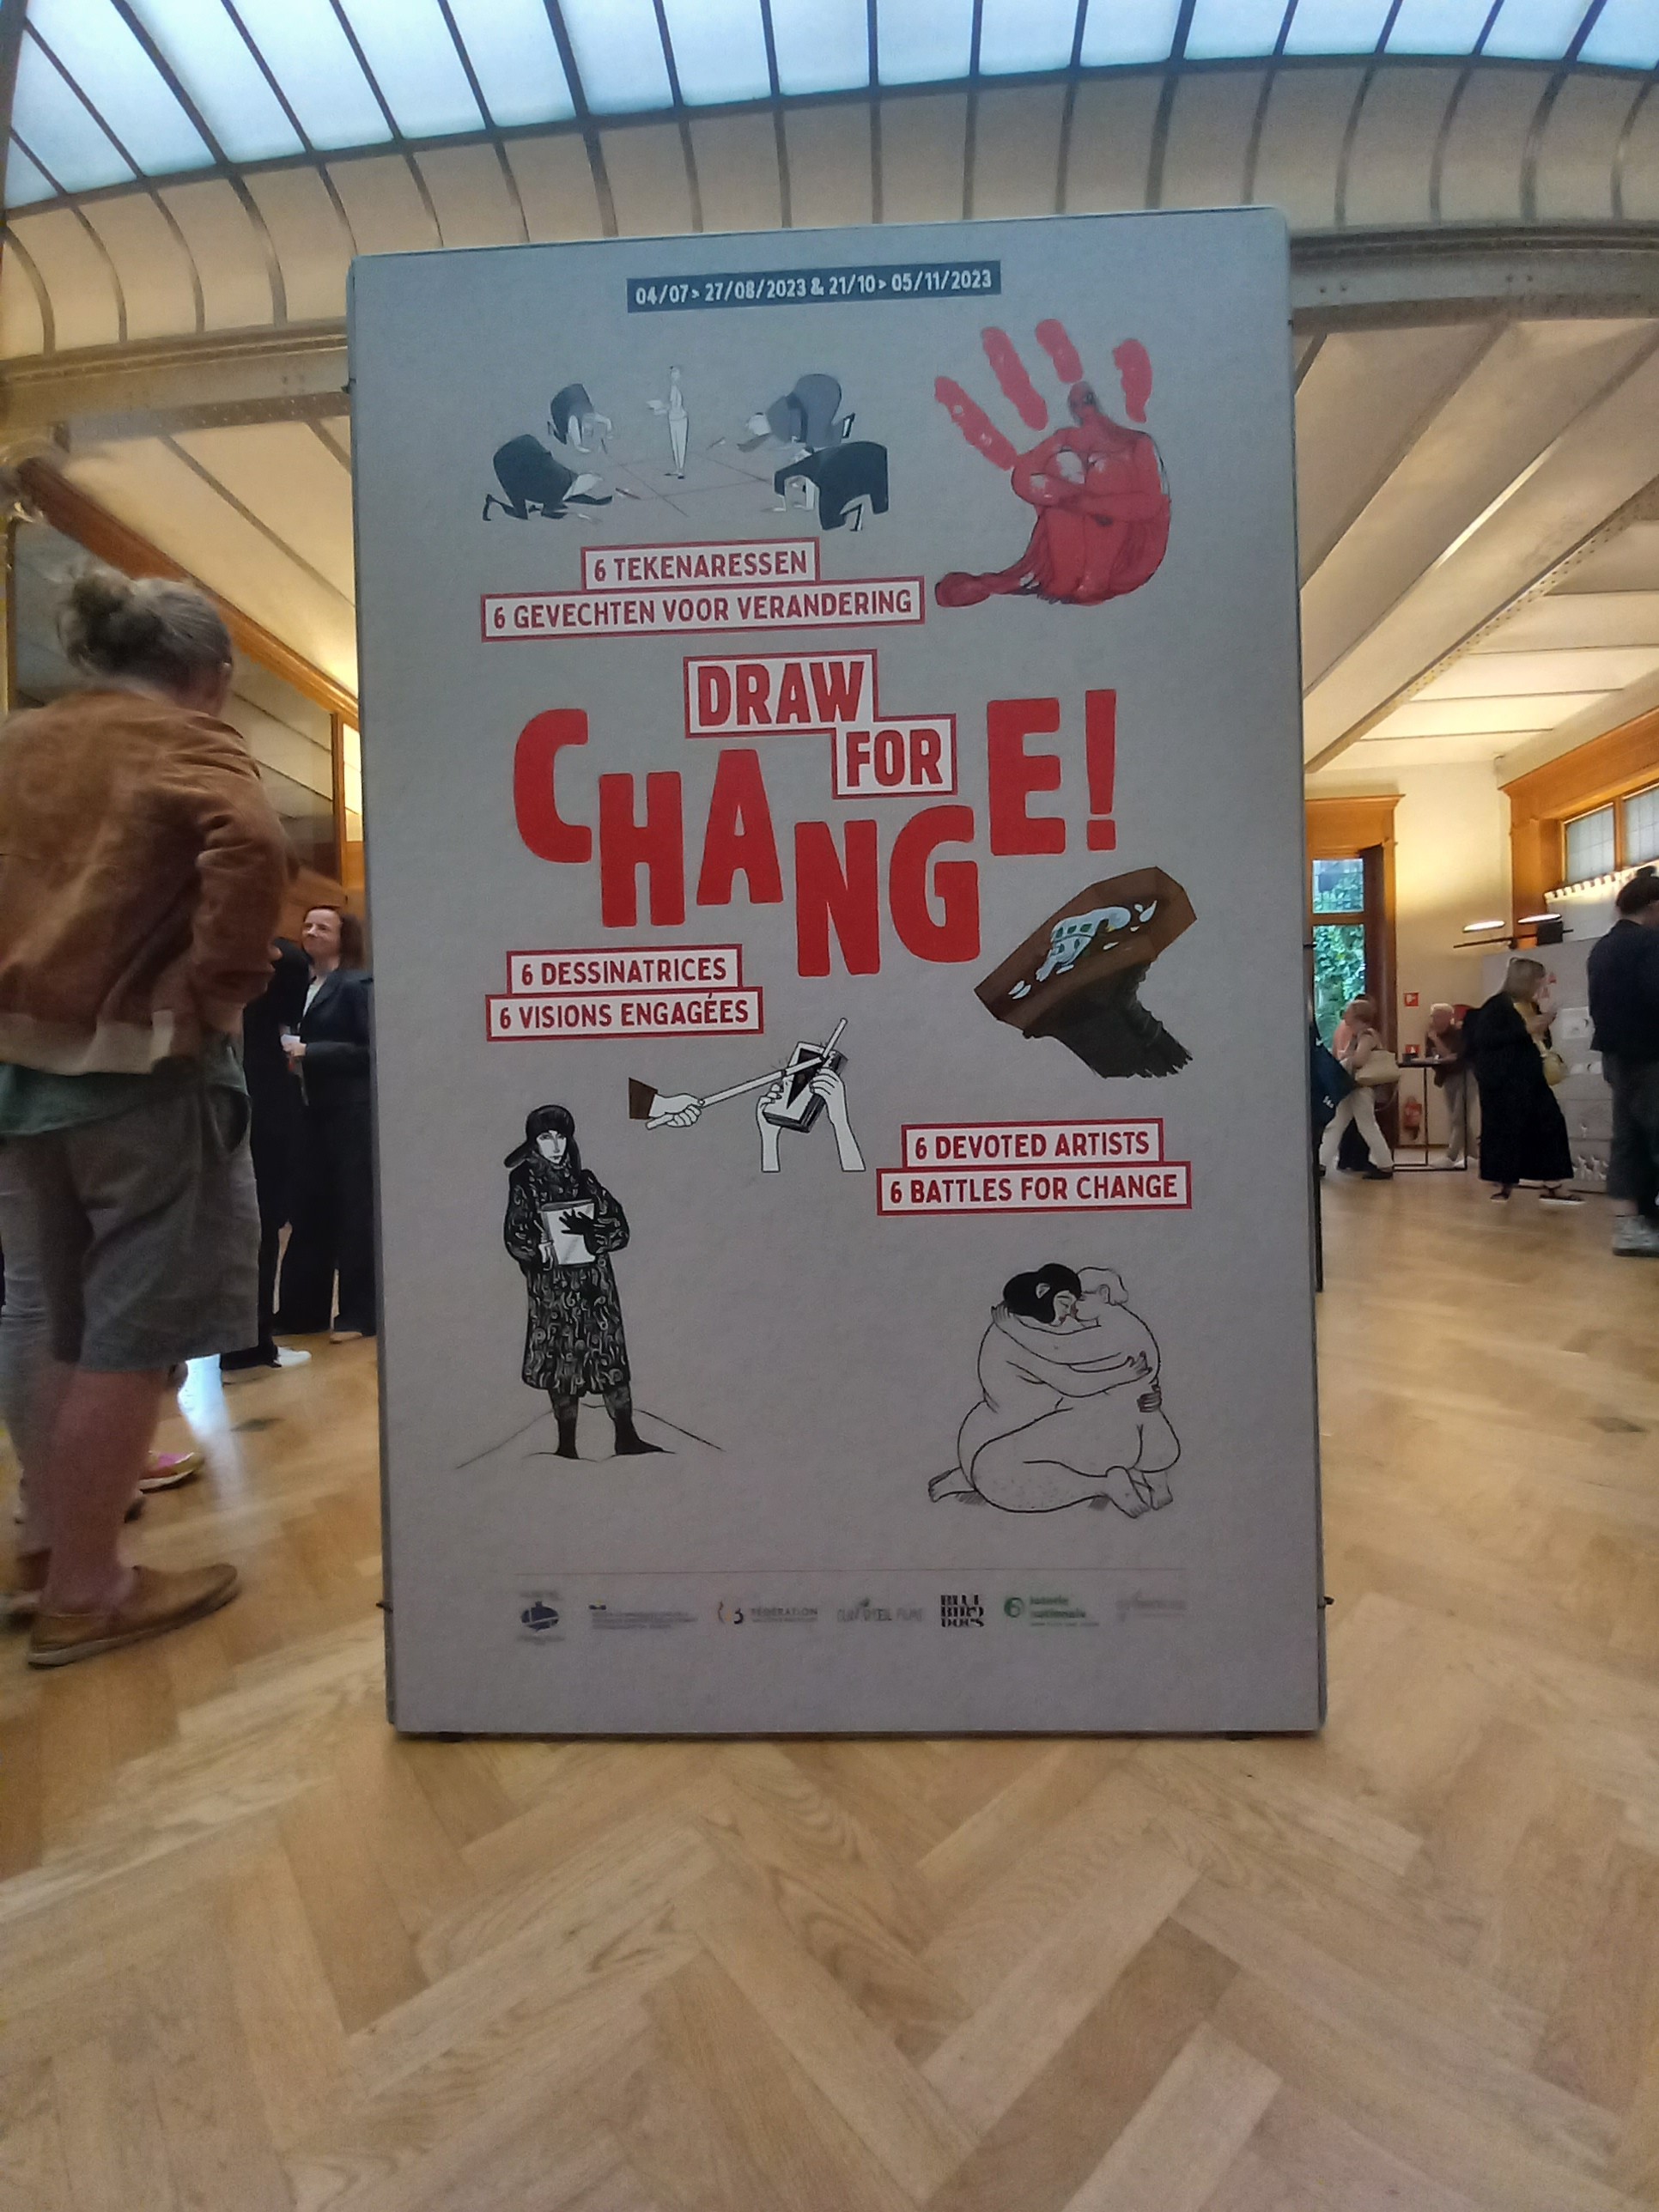 "Draw for change !" Six dessinatrices exposées au CBBD